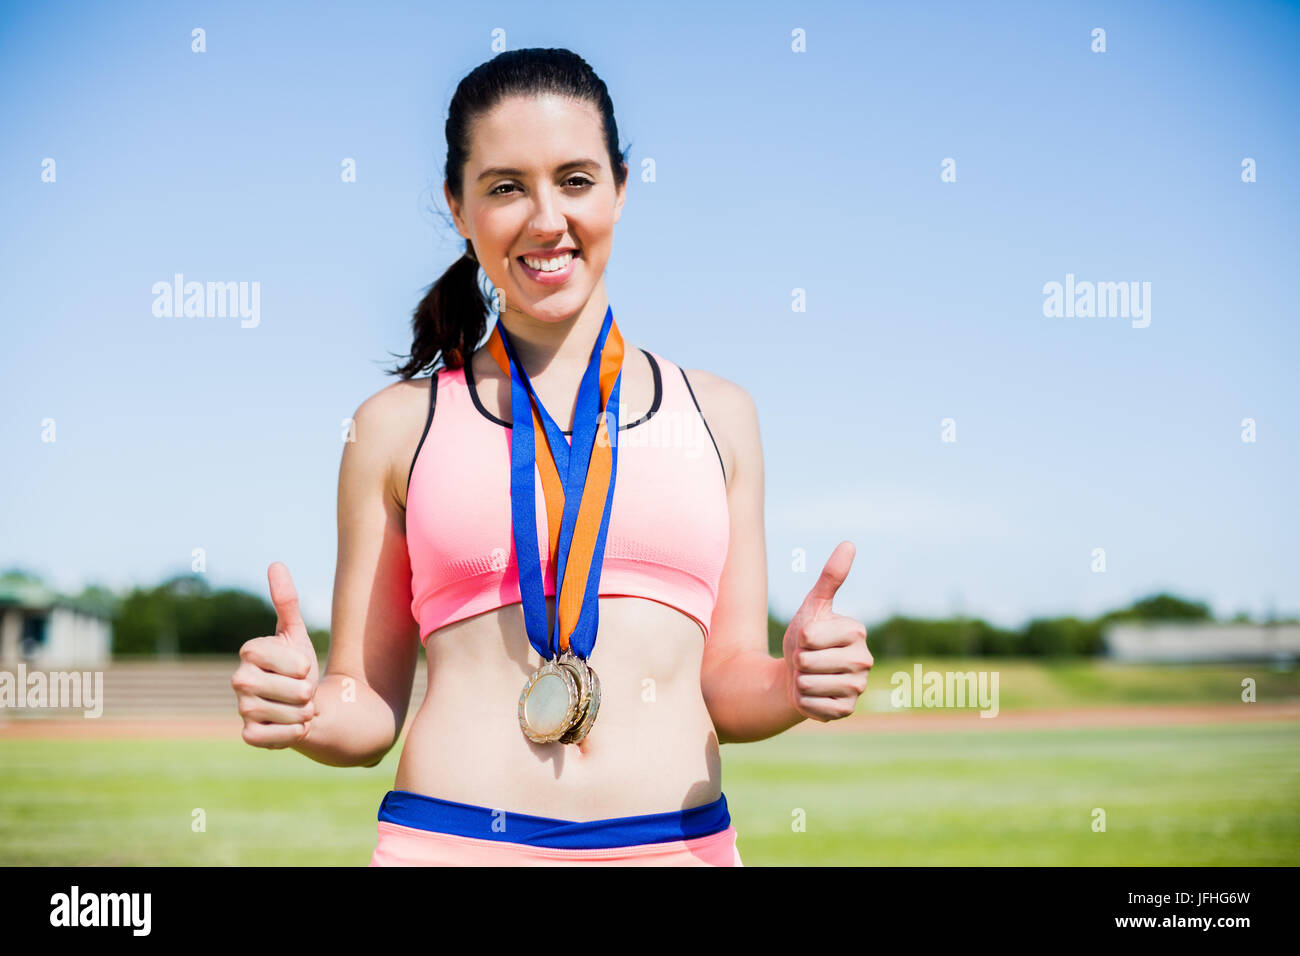 Atleta Femenina con las medallas de oro alrededor de su cuello Foto de stock